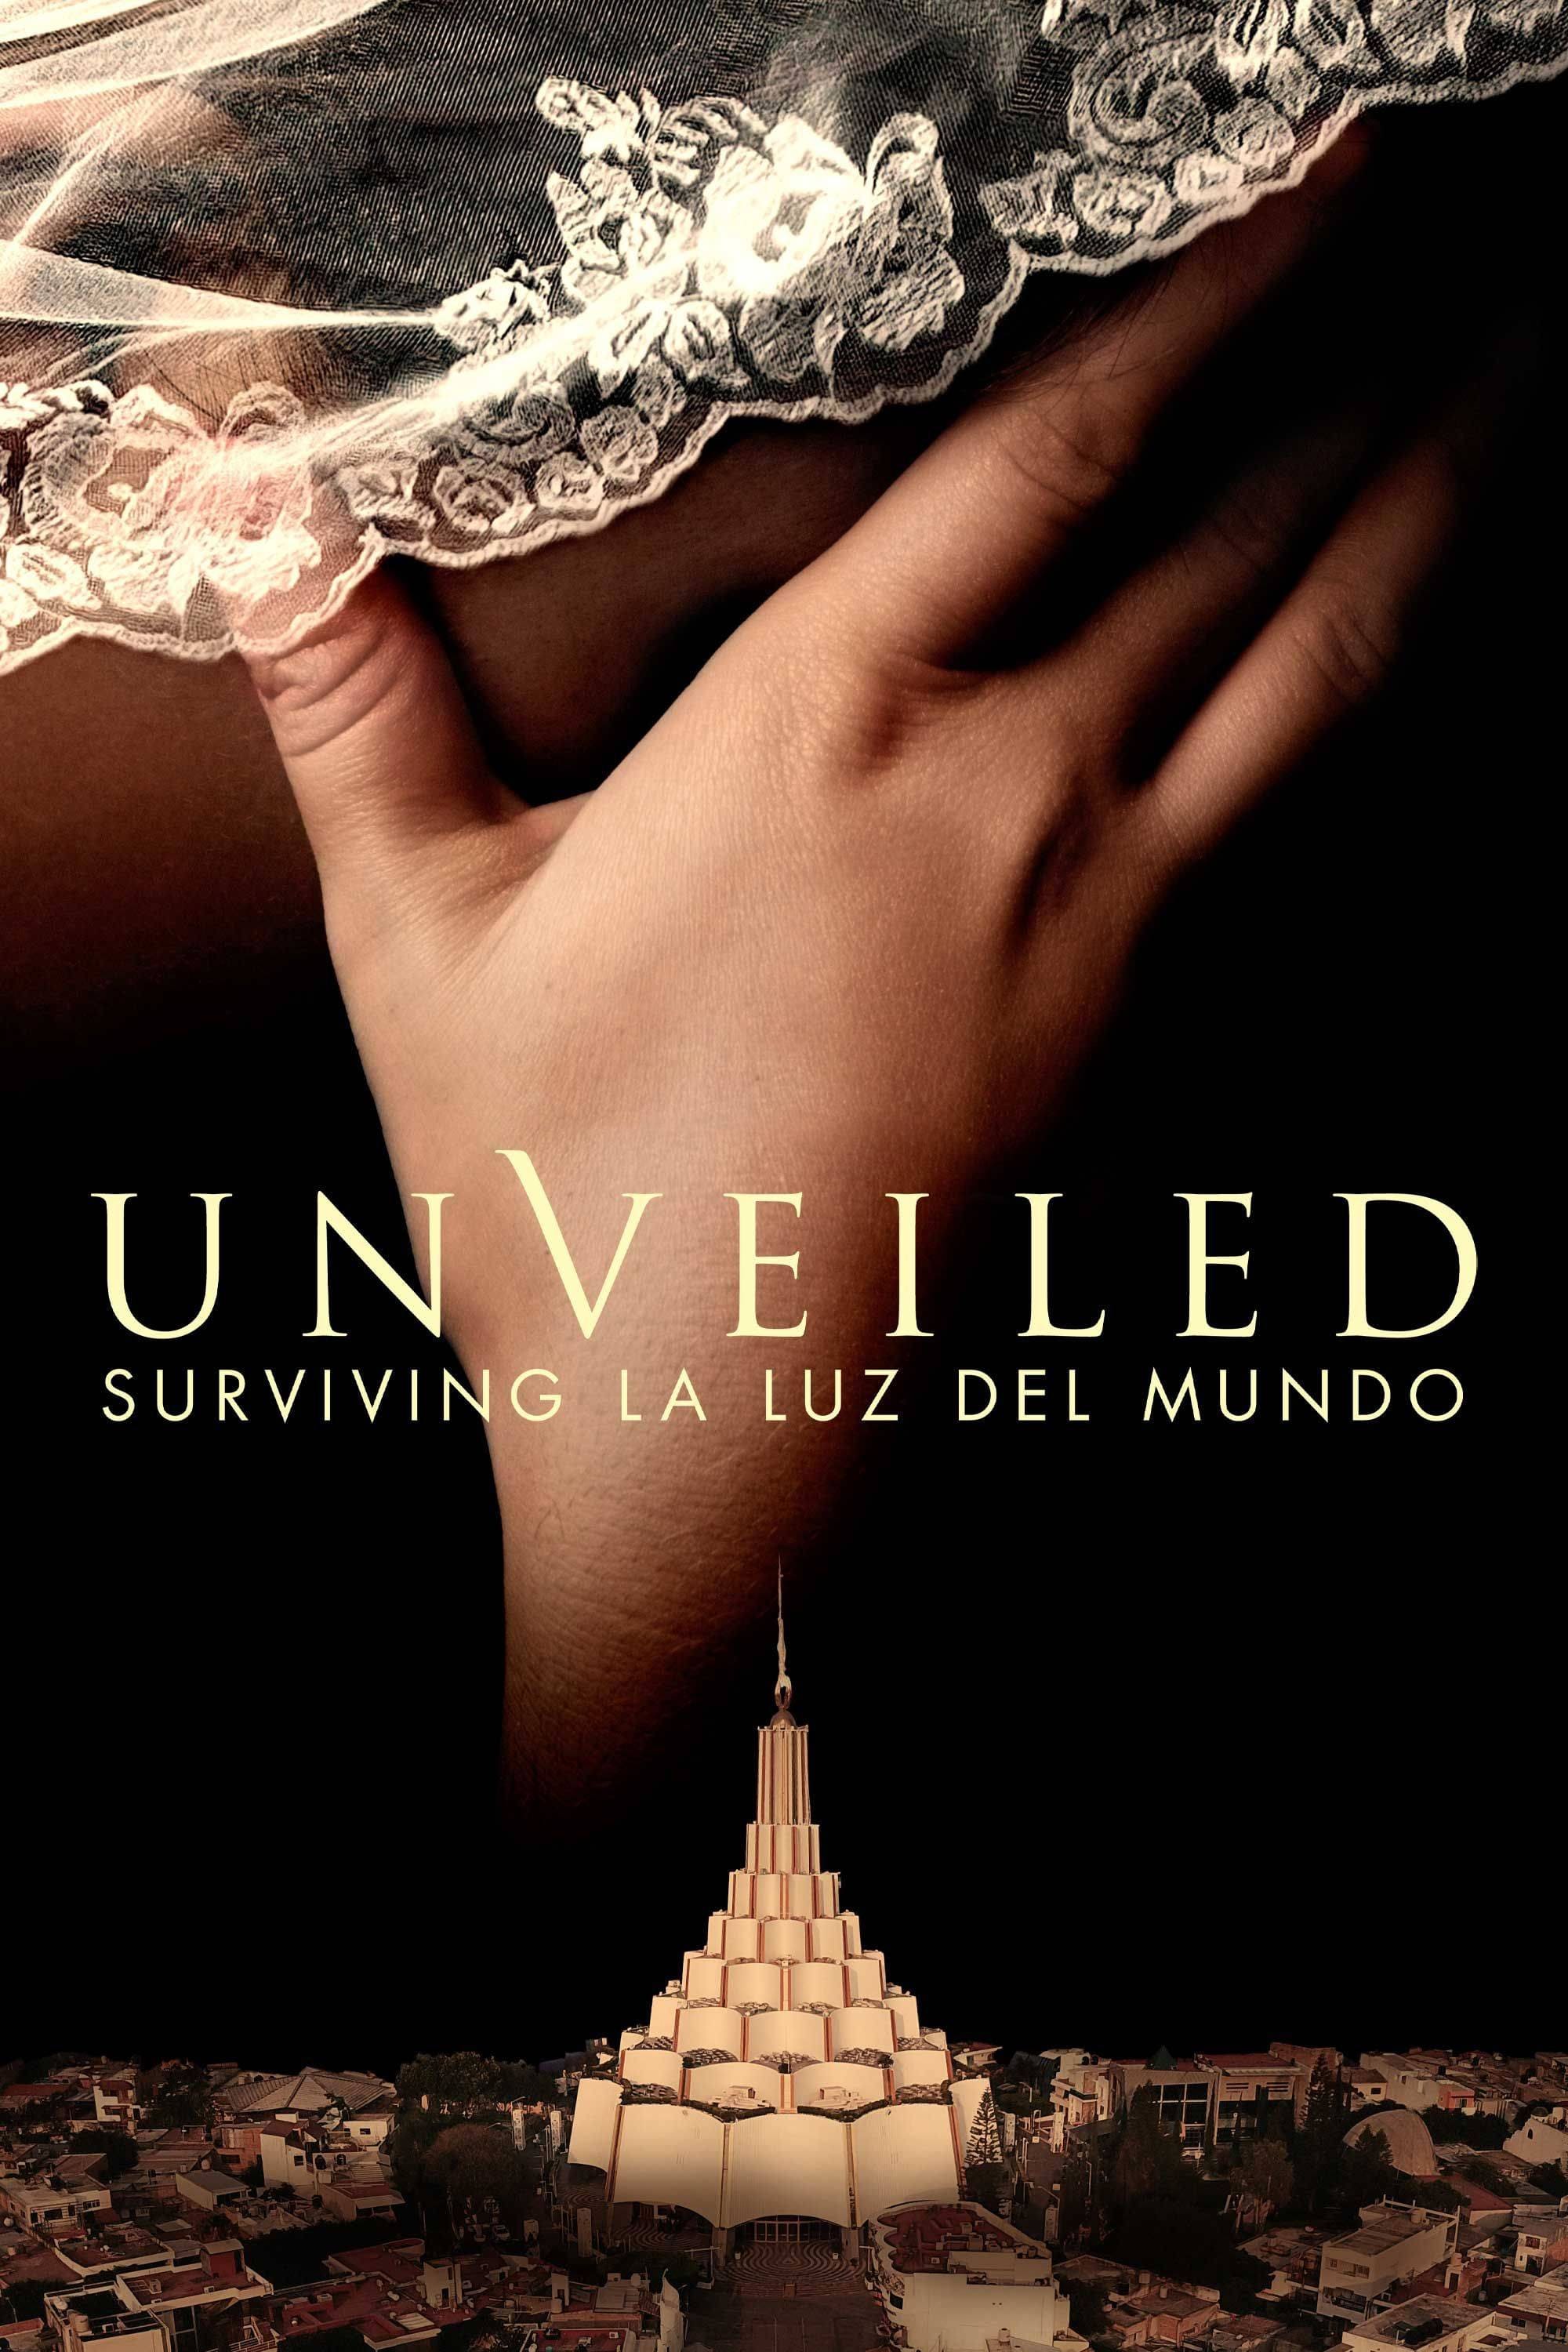 Unveiled: Surviving La Luz del Mundo TV Shows About Miniseries